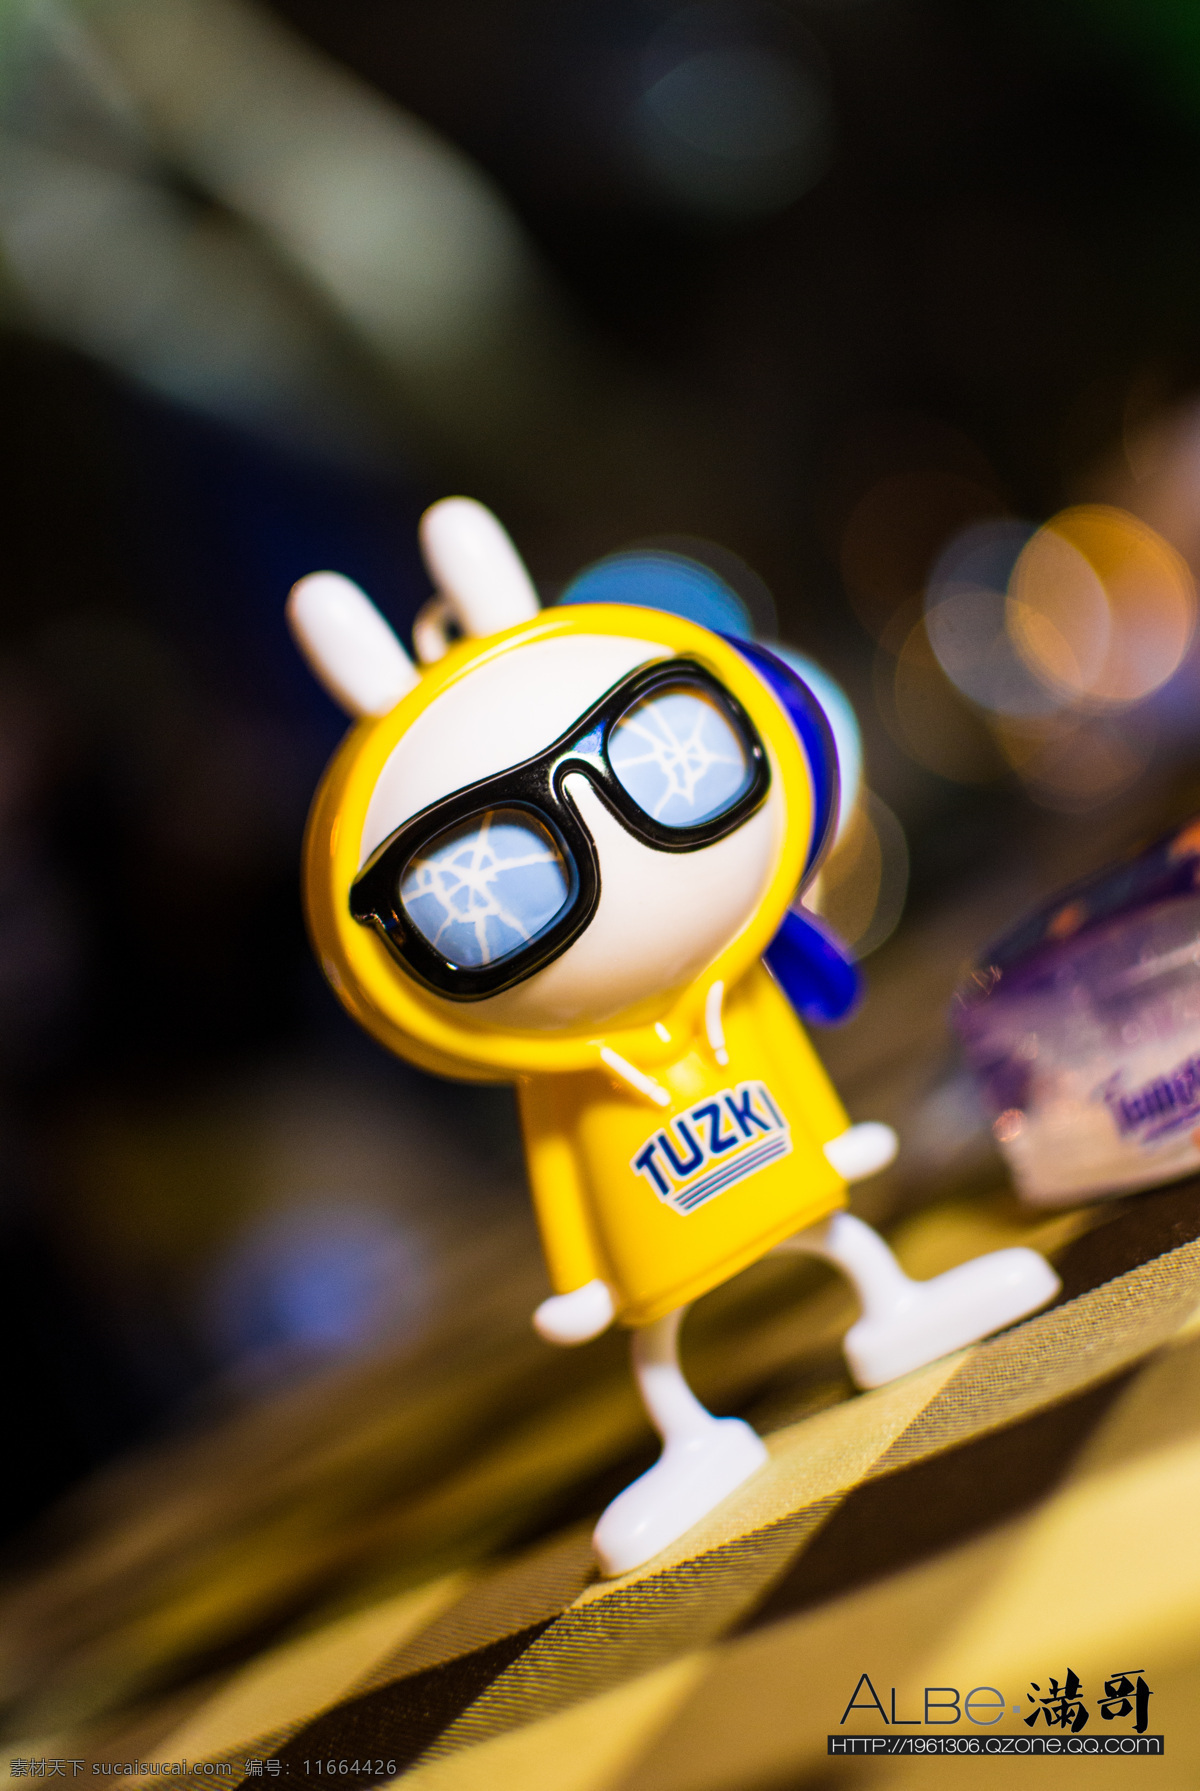 兔斯基 黄色 眼镜 可爱 肯德鸡 搞笑 近影 文化艺术